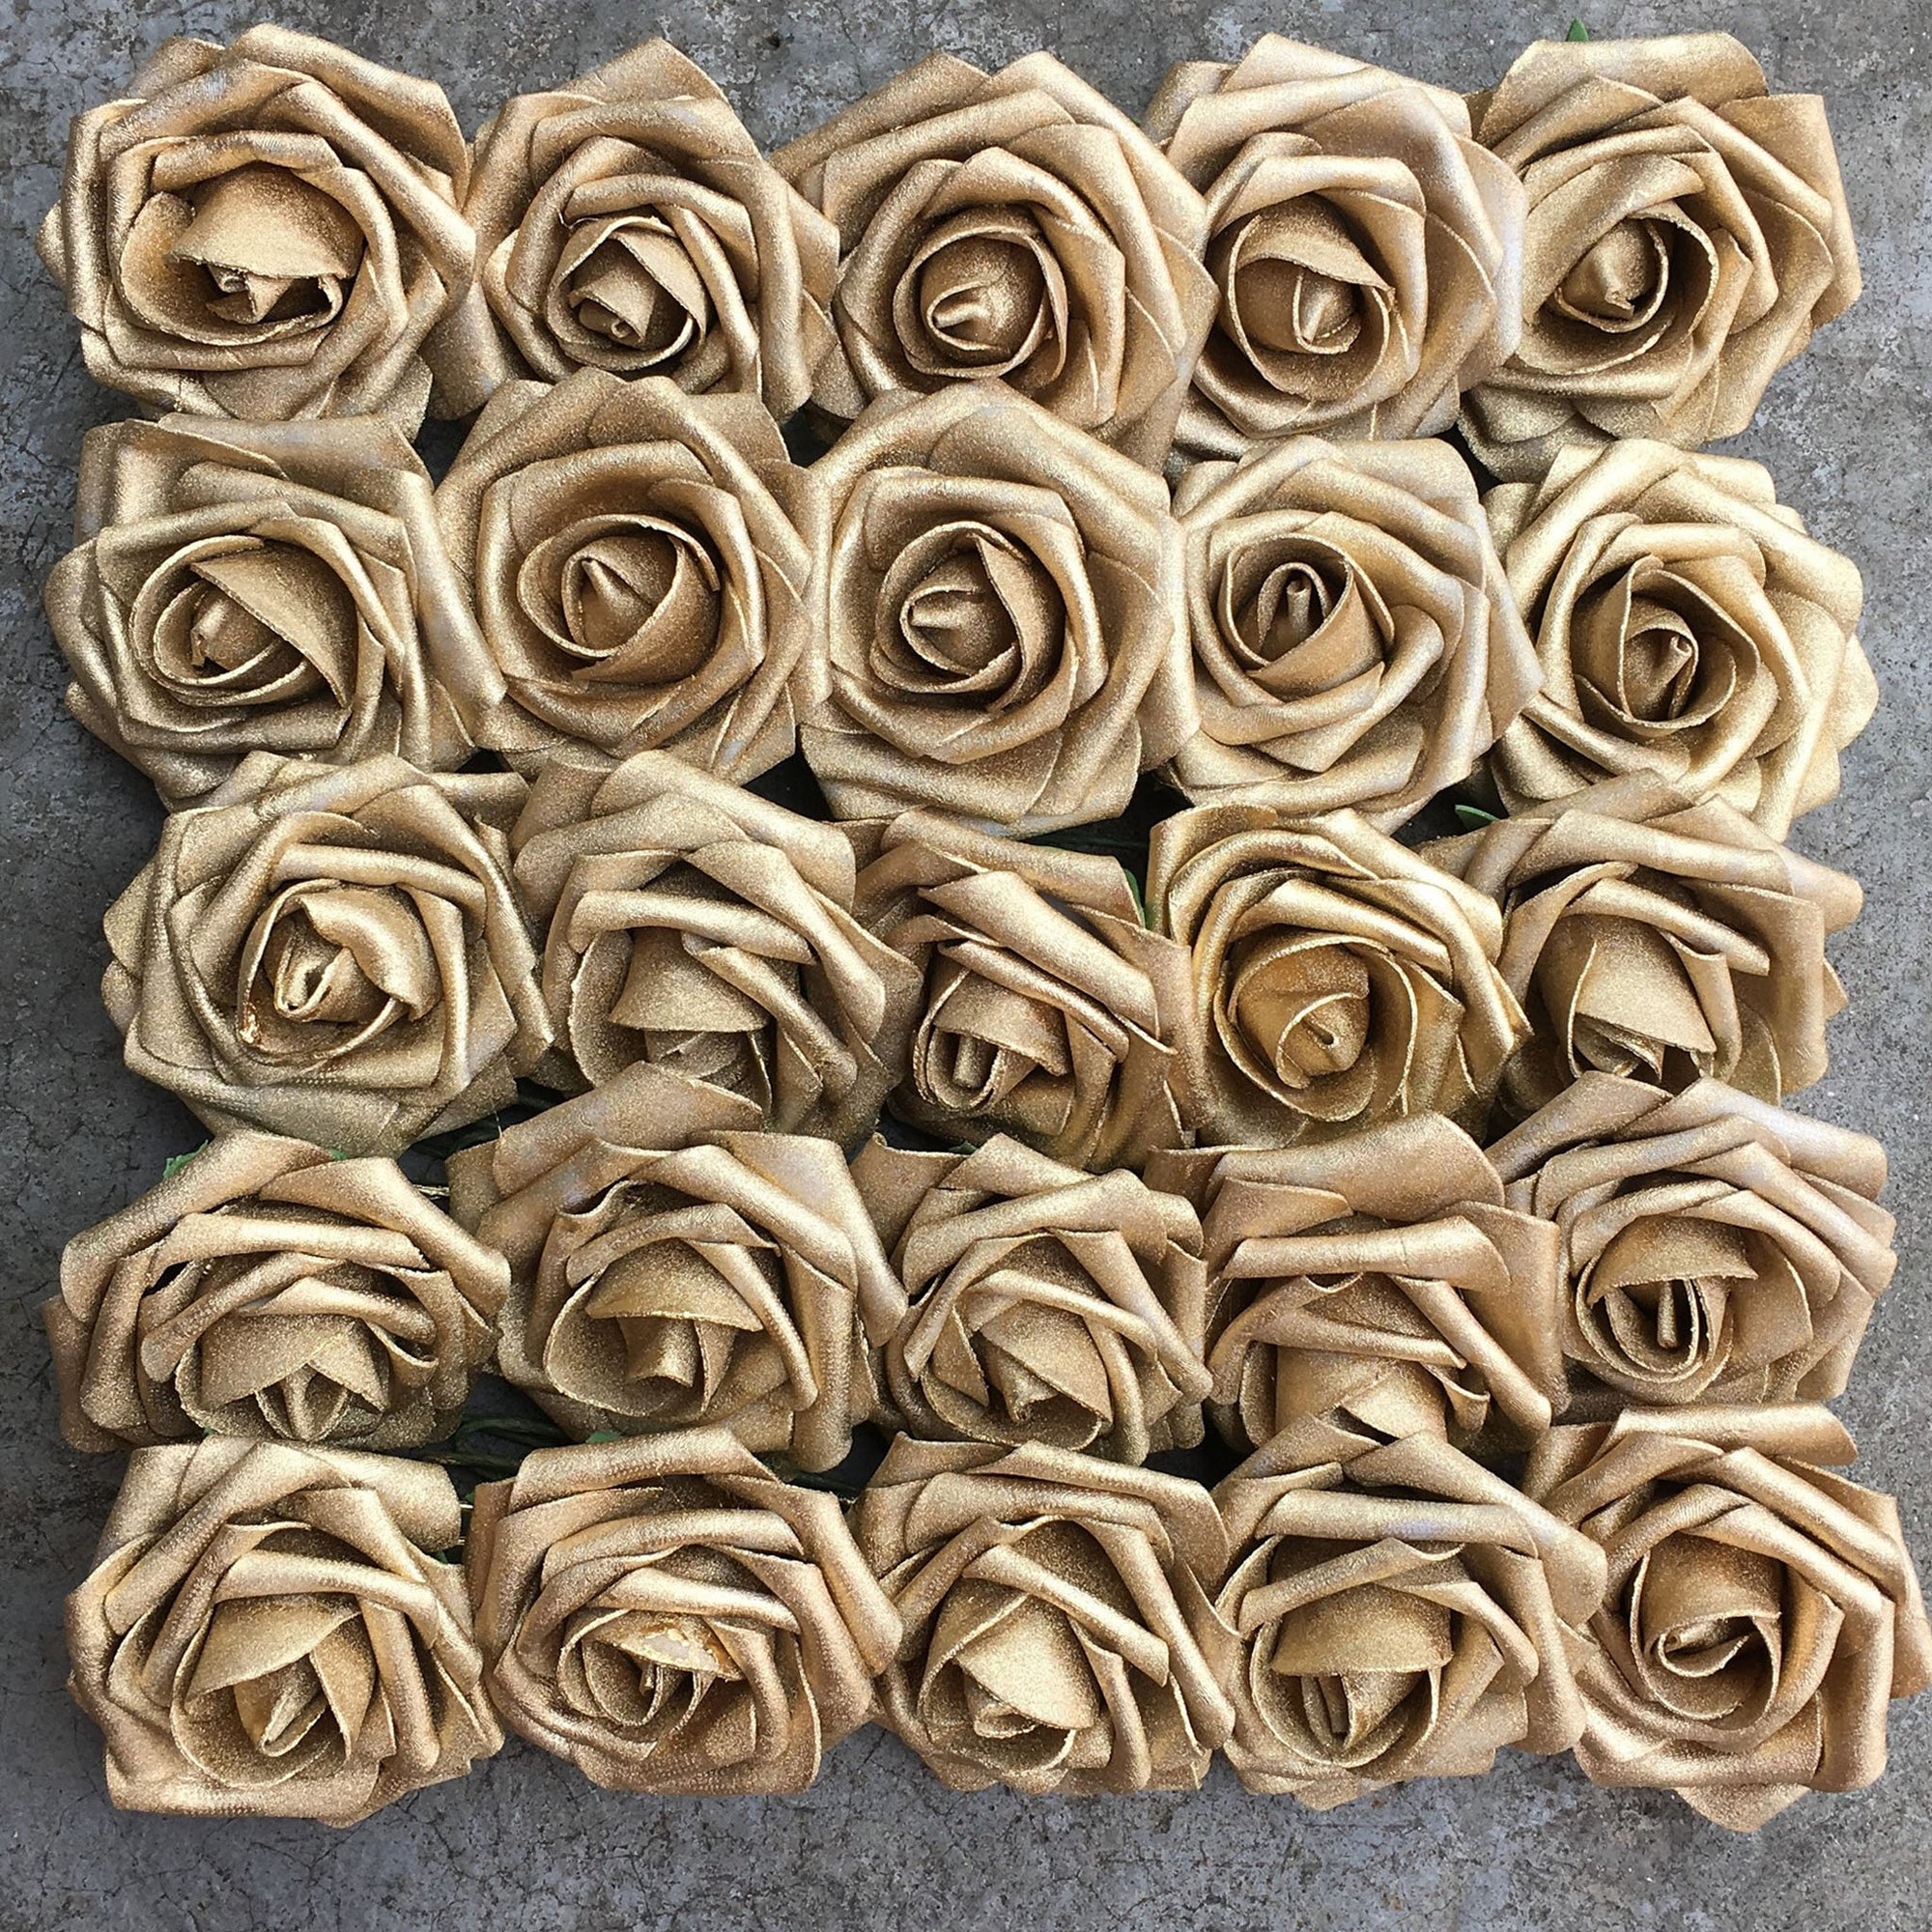 Gold Artificial Flowers Fake Roses Bulk Cake Topper